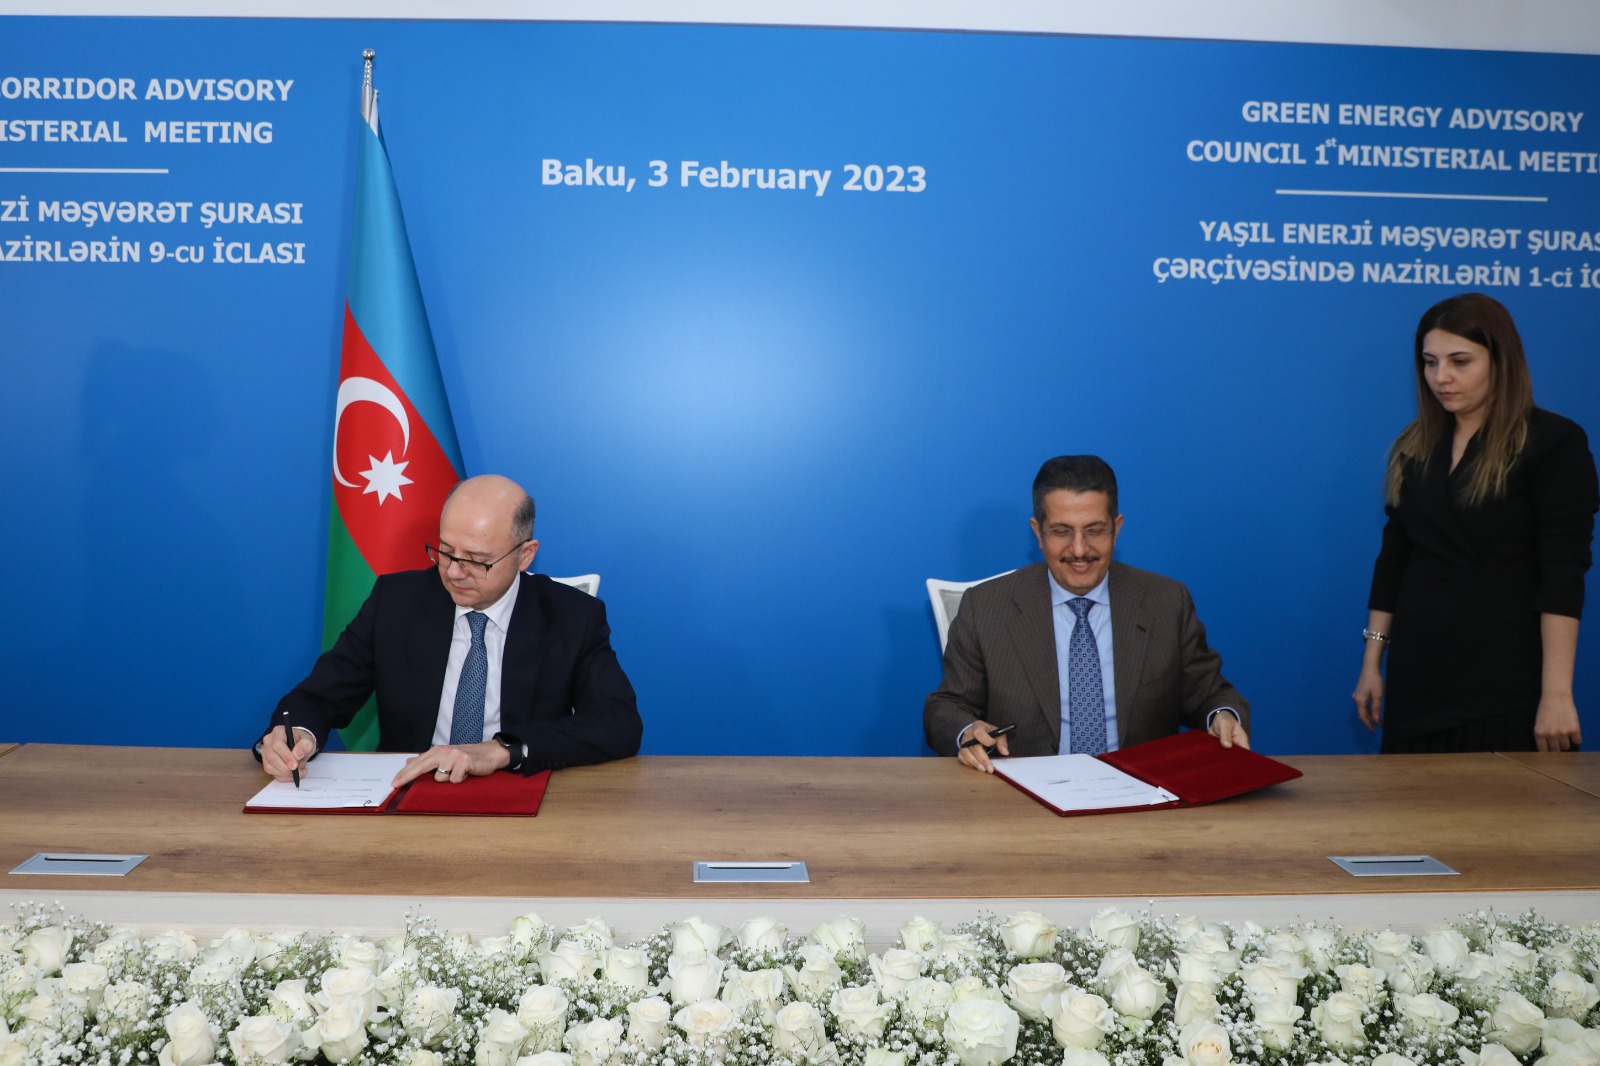 تحول الطاقة في أذربيجان ينتعش بدعم من توقيع اتفاقية بين أكوا باور السعودية وأذربيجان